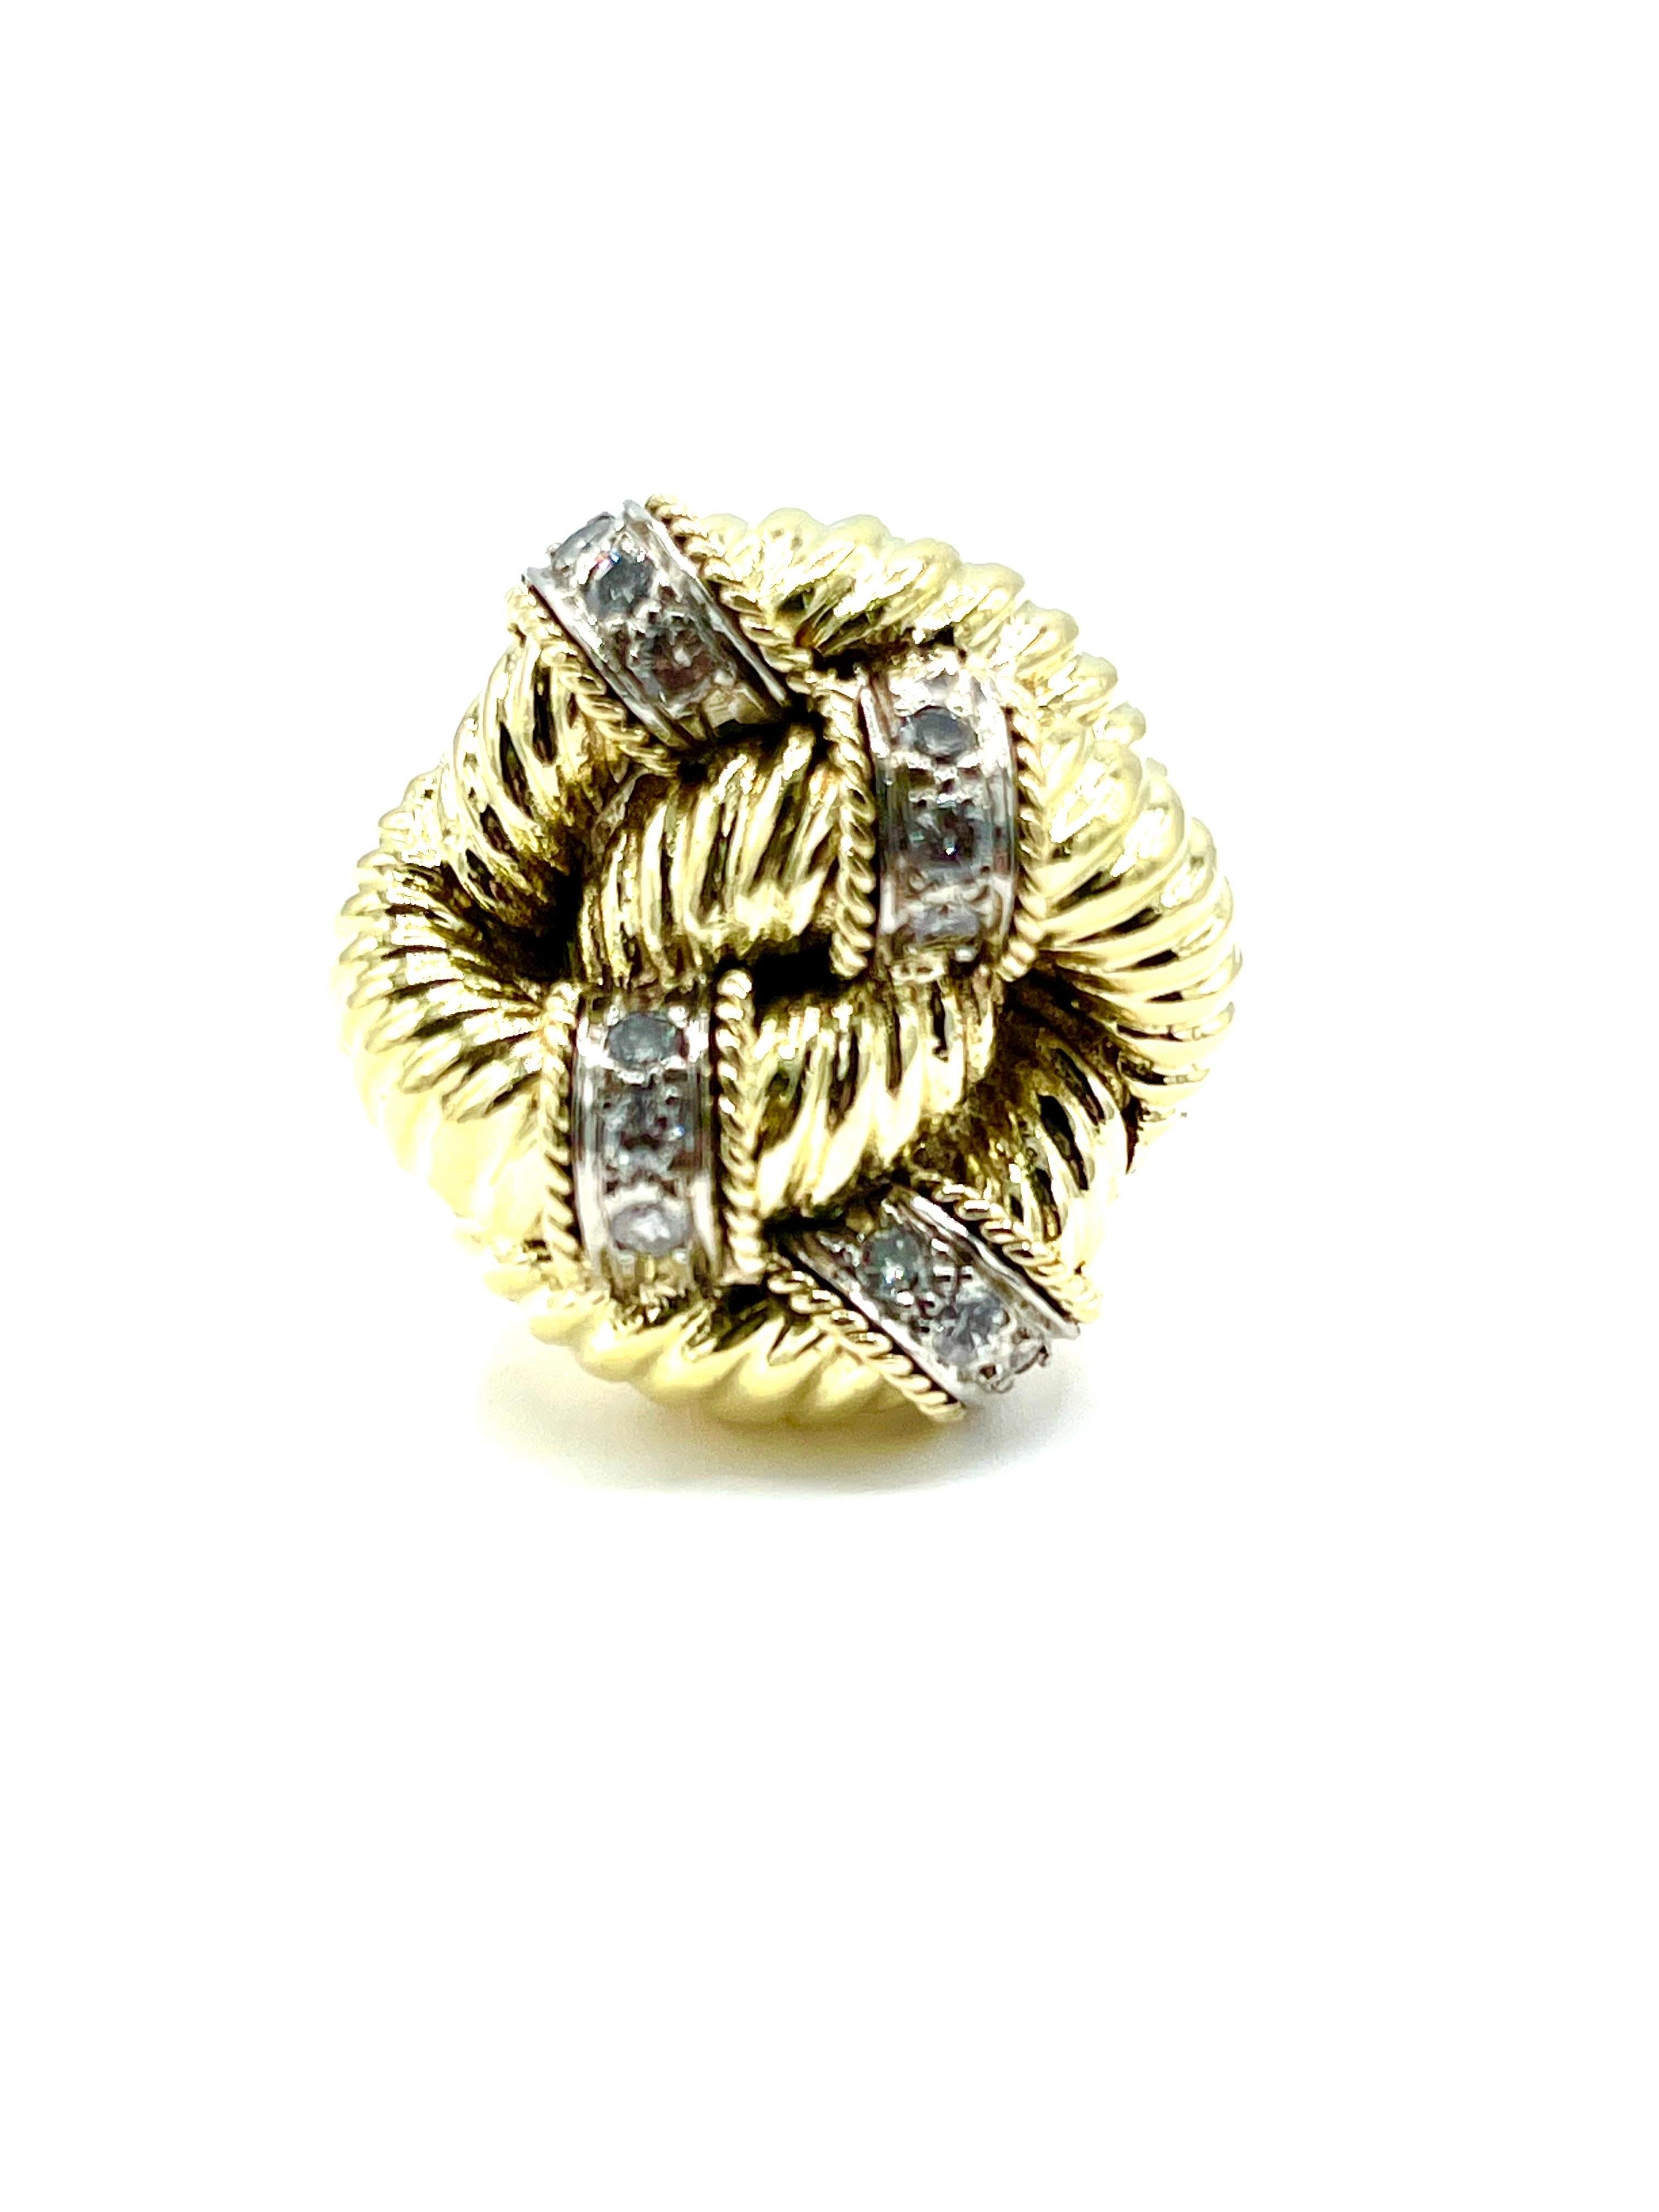 Ein wunderschön gestalteter handgefertigter Diamant-Cocktailring!  Der Ring hat die Form eines Liebesknotens, in dessen Schleifen aus 18 Karat Gelbgold Diamanten eingefasst sind.  Der Ring ist mit 12 Diamanten mit einem Gesamtgewicht von 0,48 Karat